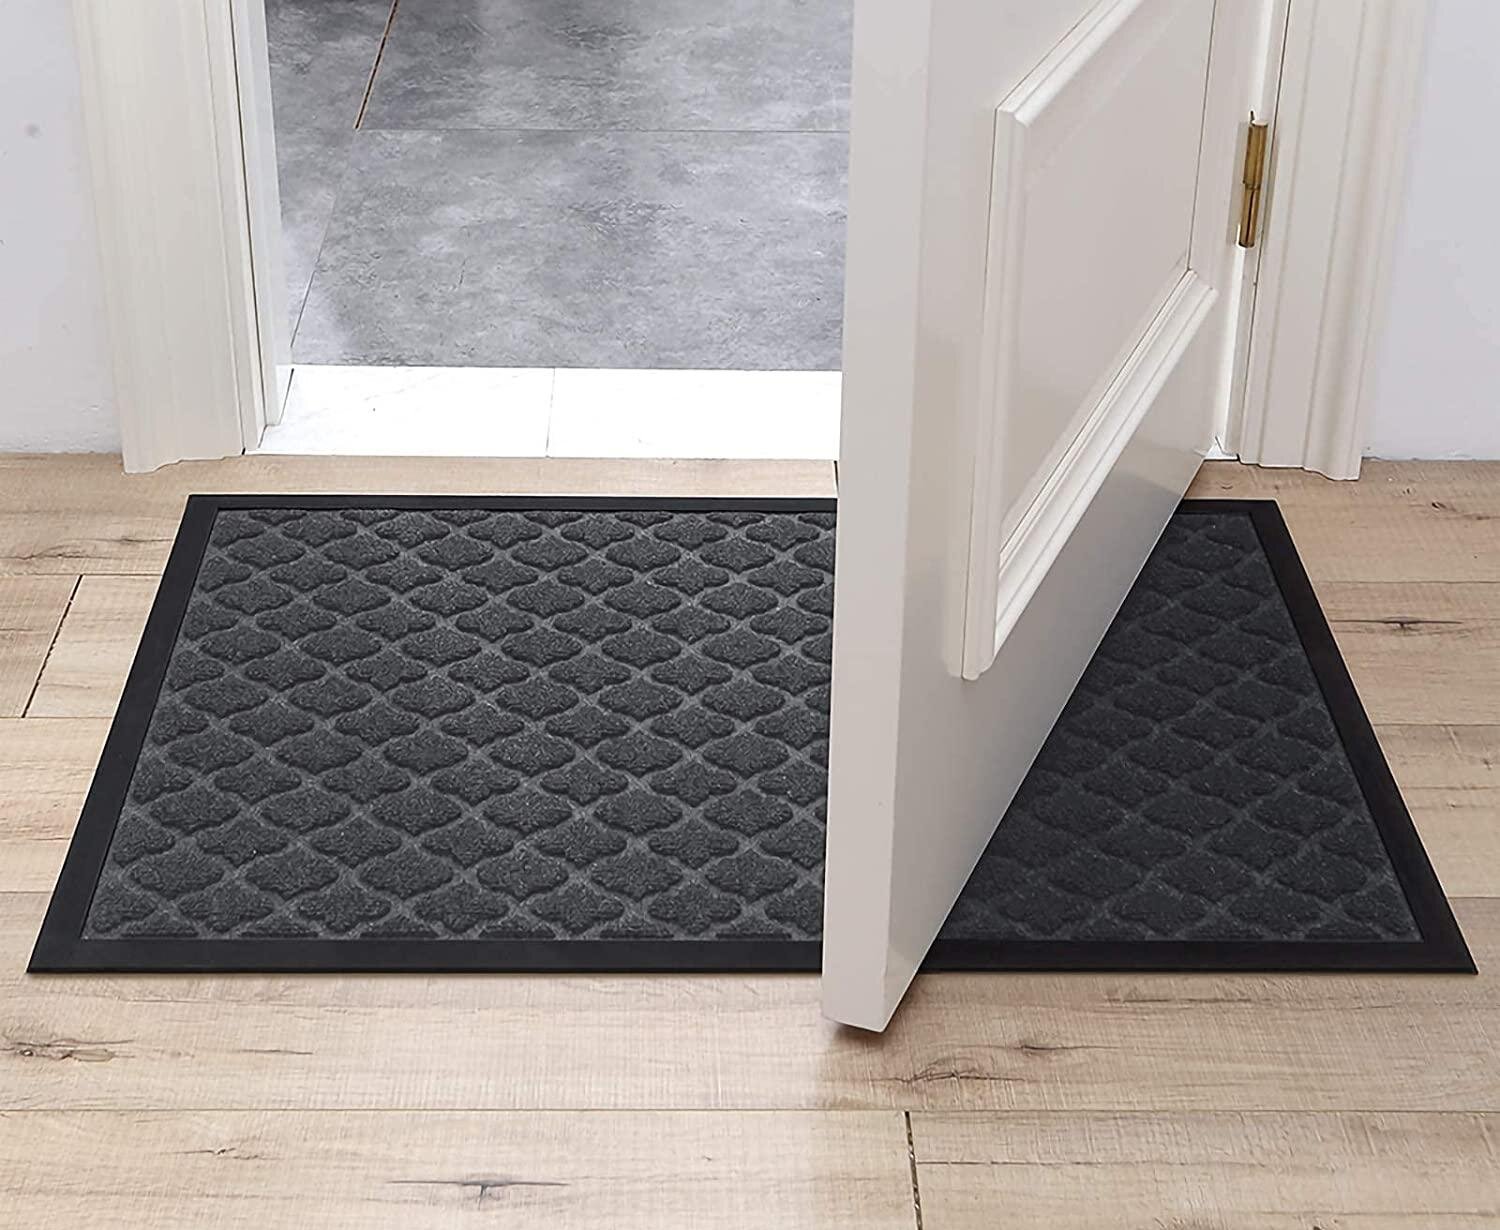 DEXI Doormat Indoor Large Front Door Mat Entrance Outdoor,Heavy Duty Rubber Outside Floor Rug Waterproof Low-Profile,3'x5',Grey 